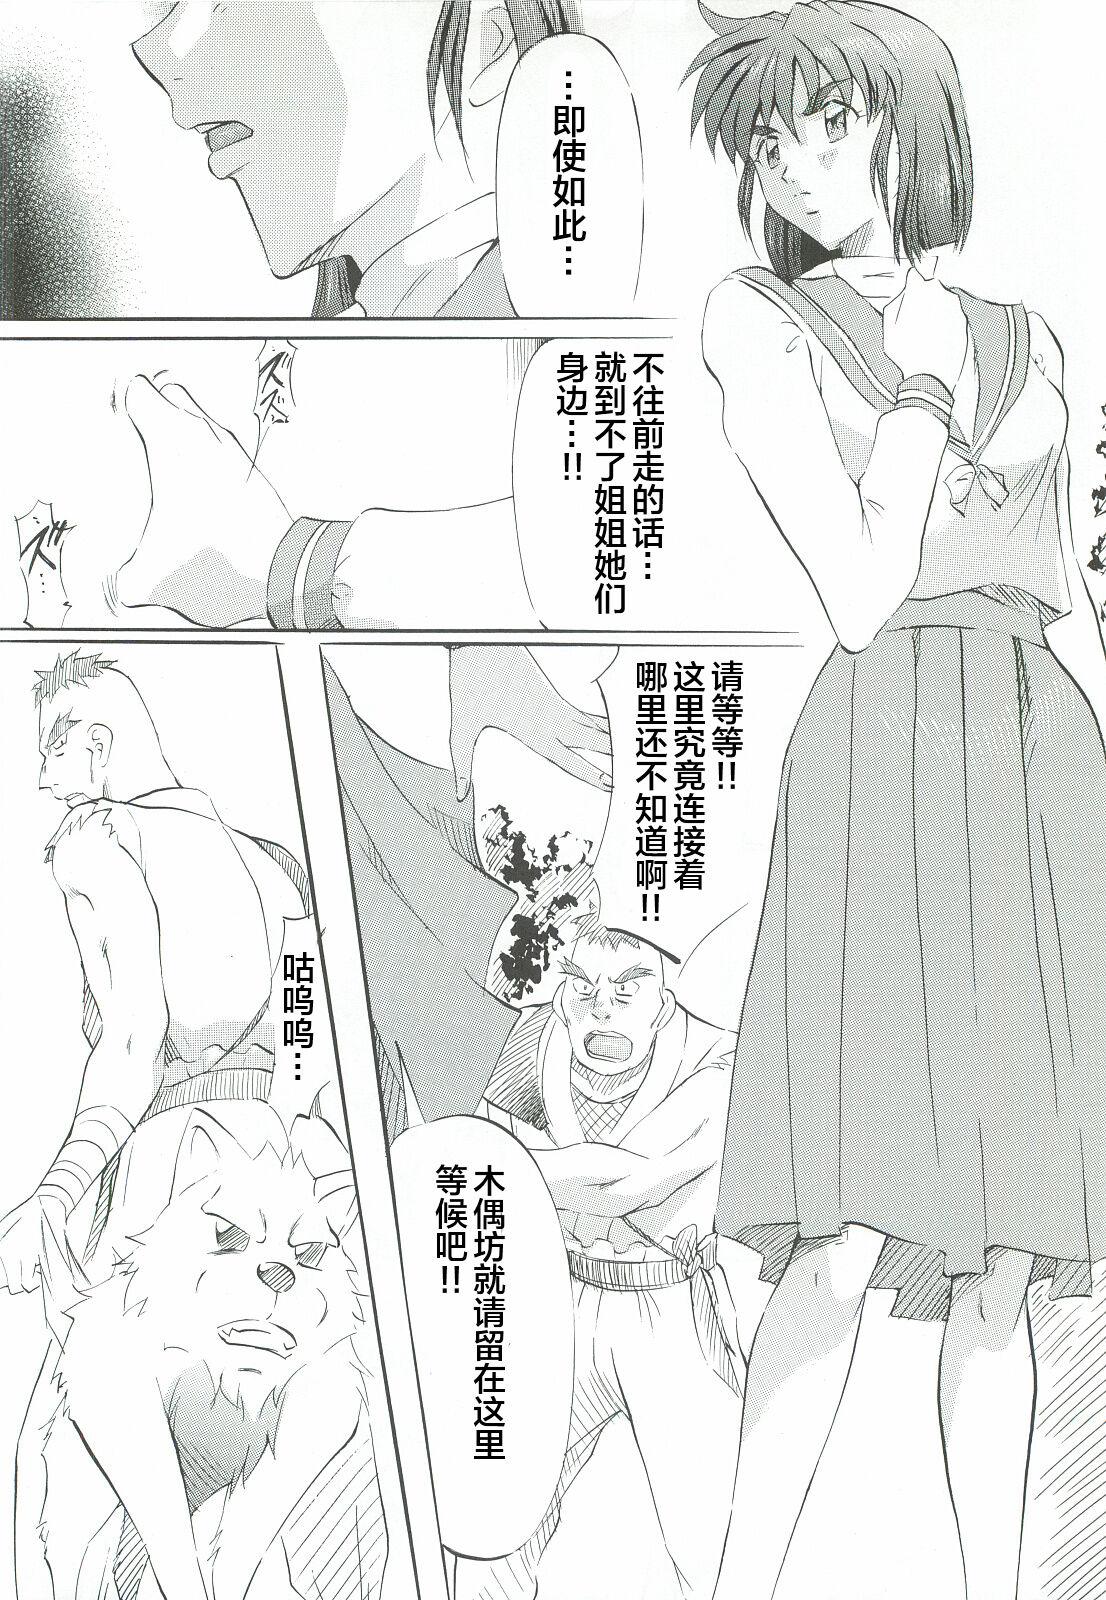 Pounded Ai & Mai Gaiden - Kishin Fukkatsu no Shou - Twin angels | injuu seisen Pain - Page 7